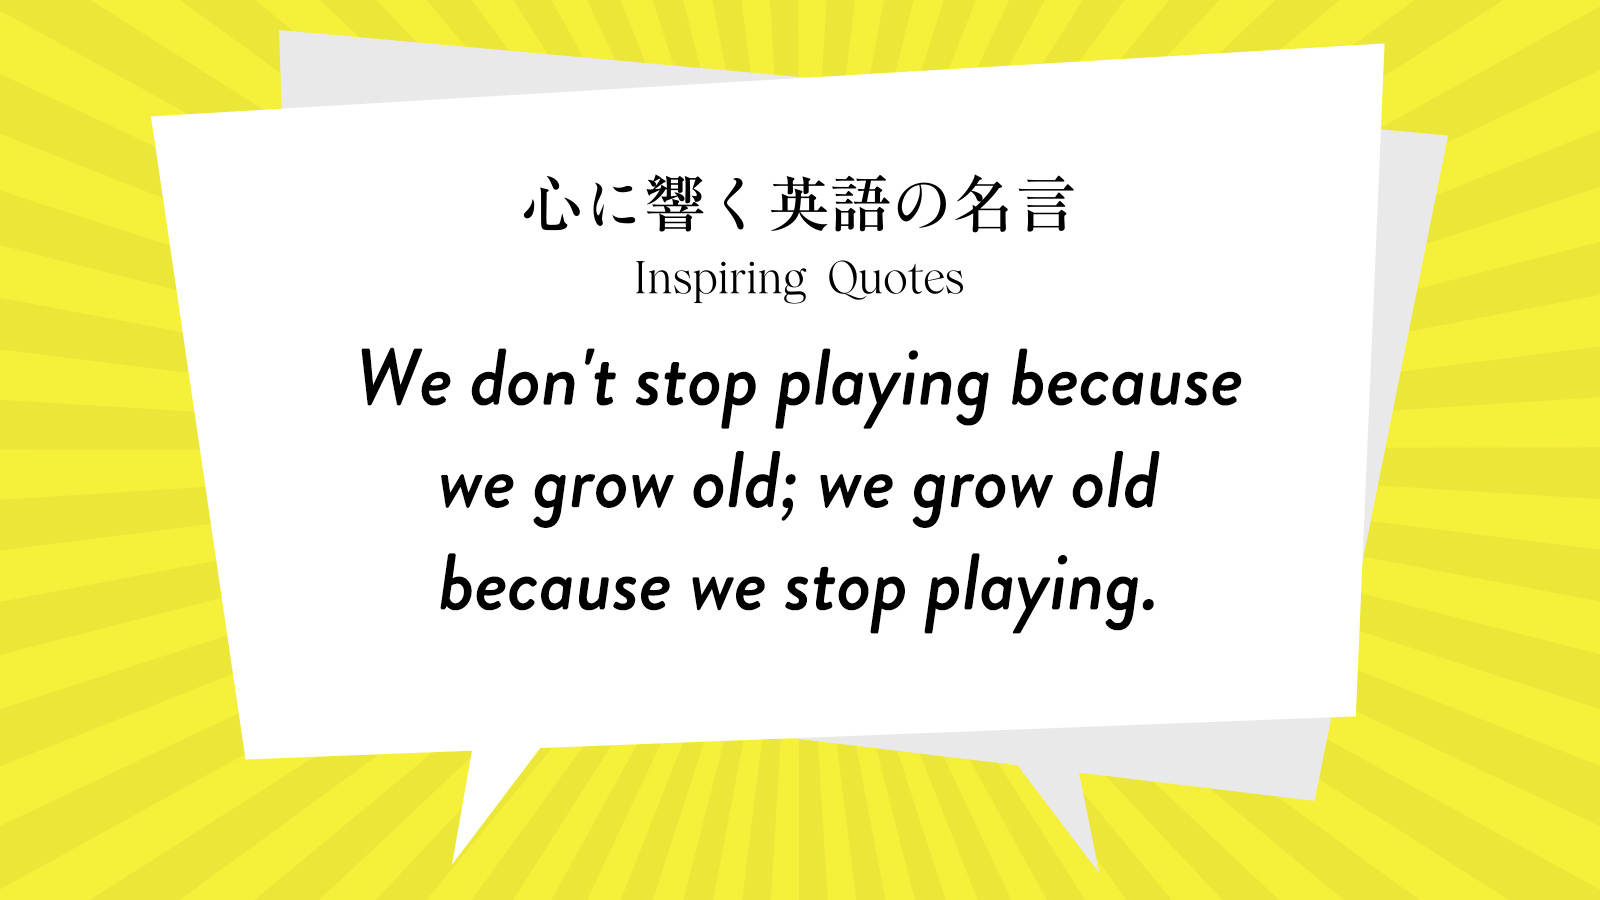 今週の名言 “We don’t stop playing because we grow old; we grow old because we stop playing.” | Inspiring Quotes: 心に響く英語の名言